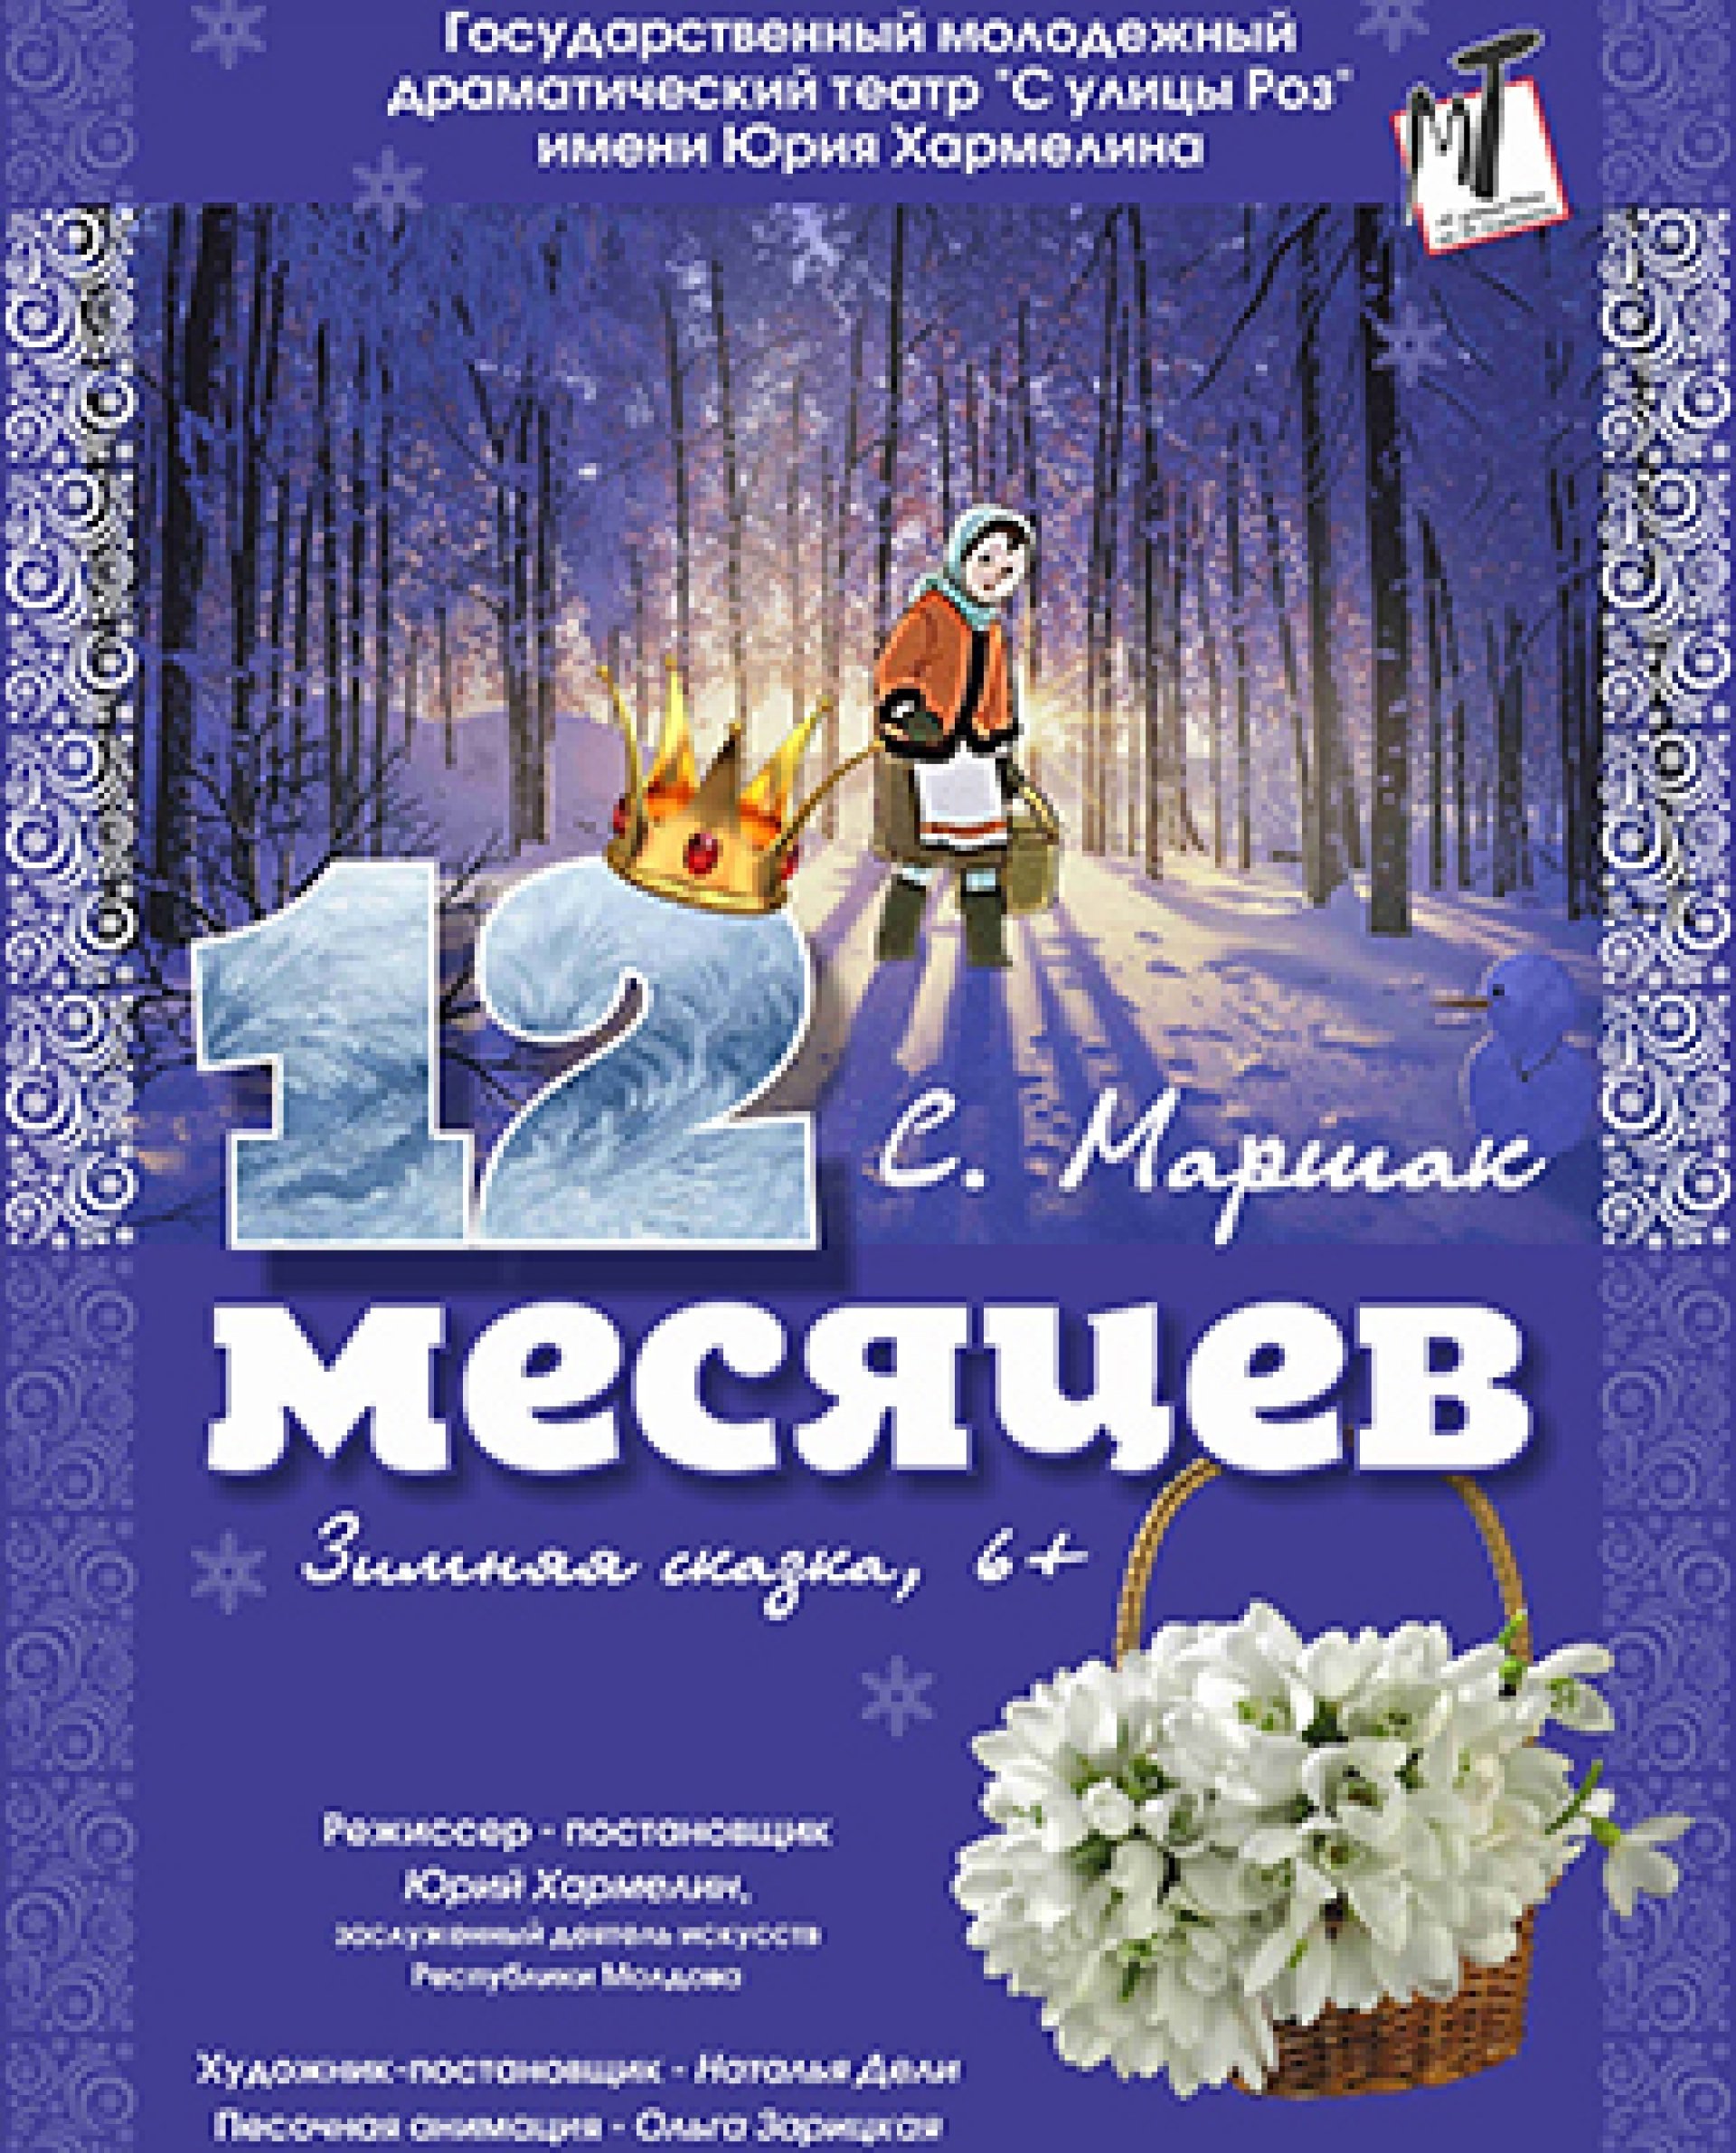 ДВЕНАДЦАТЬ МЕСЯЦЕВ - 15.01.22 в 14-00